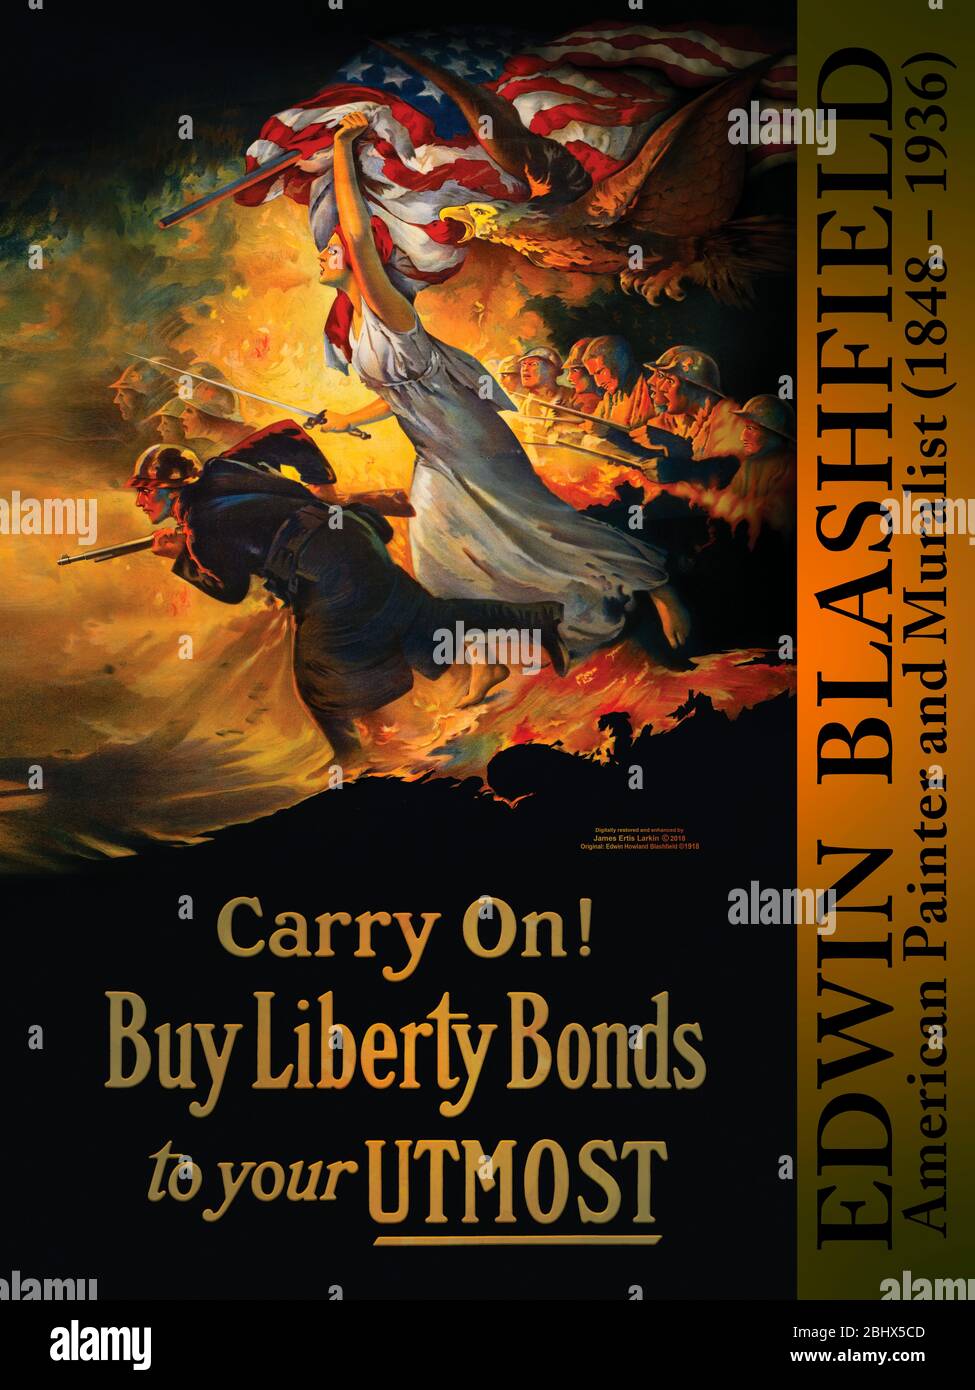 Il poster della prima Guerra Mondiale mostra i soldati che si caricano in battaglia, accompagnati da Lady Liberty con una spada e una bandiera americana. Con un banner laterale aggiunto Foto Stock